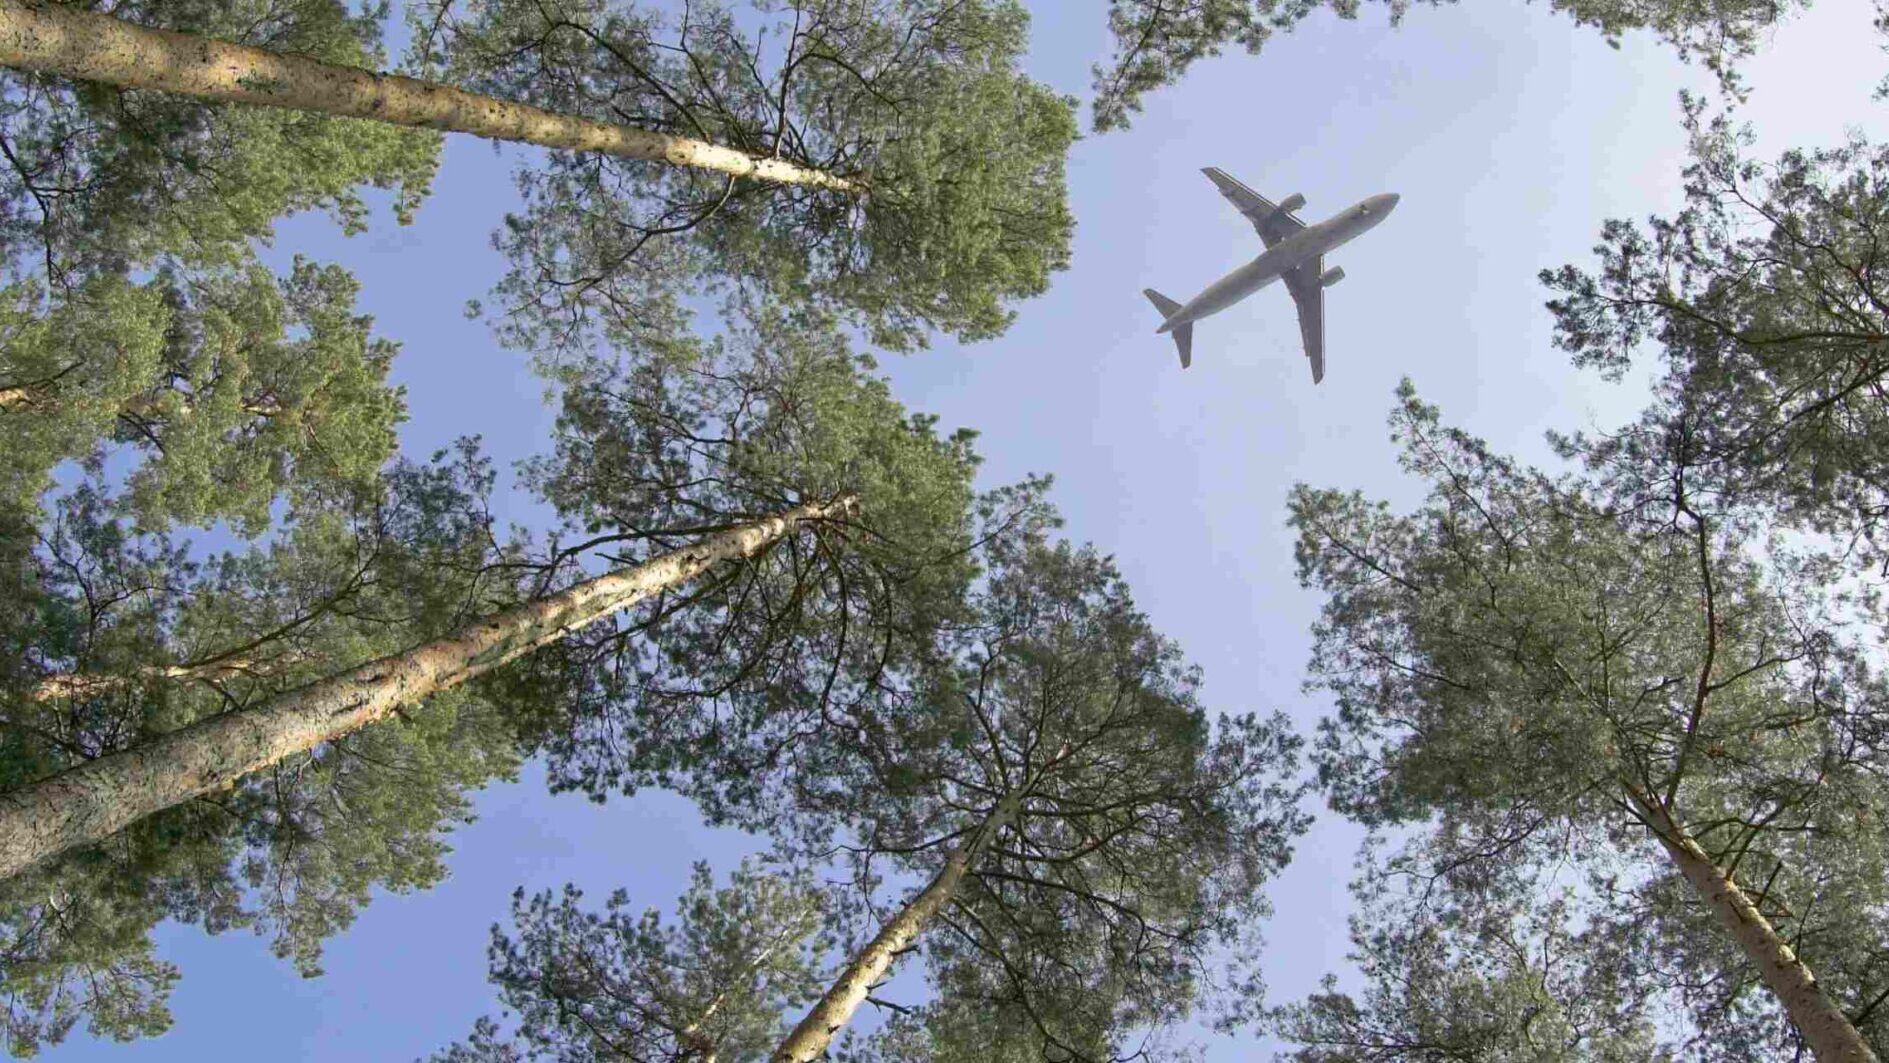 Forze Aeree Svizzere: l’aviazione e i carburanti di cui si fa uso possono dare un contributo importante nel contrasto al cambiamento climatico